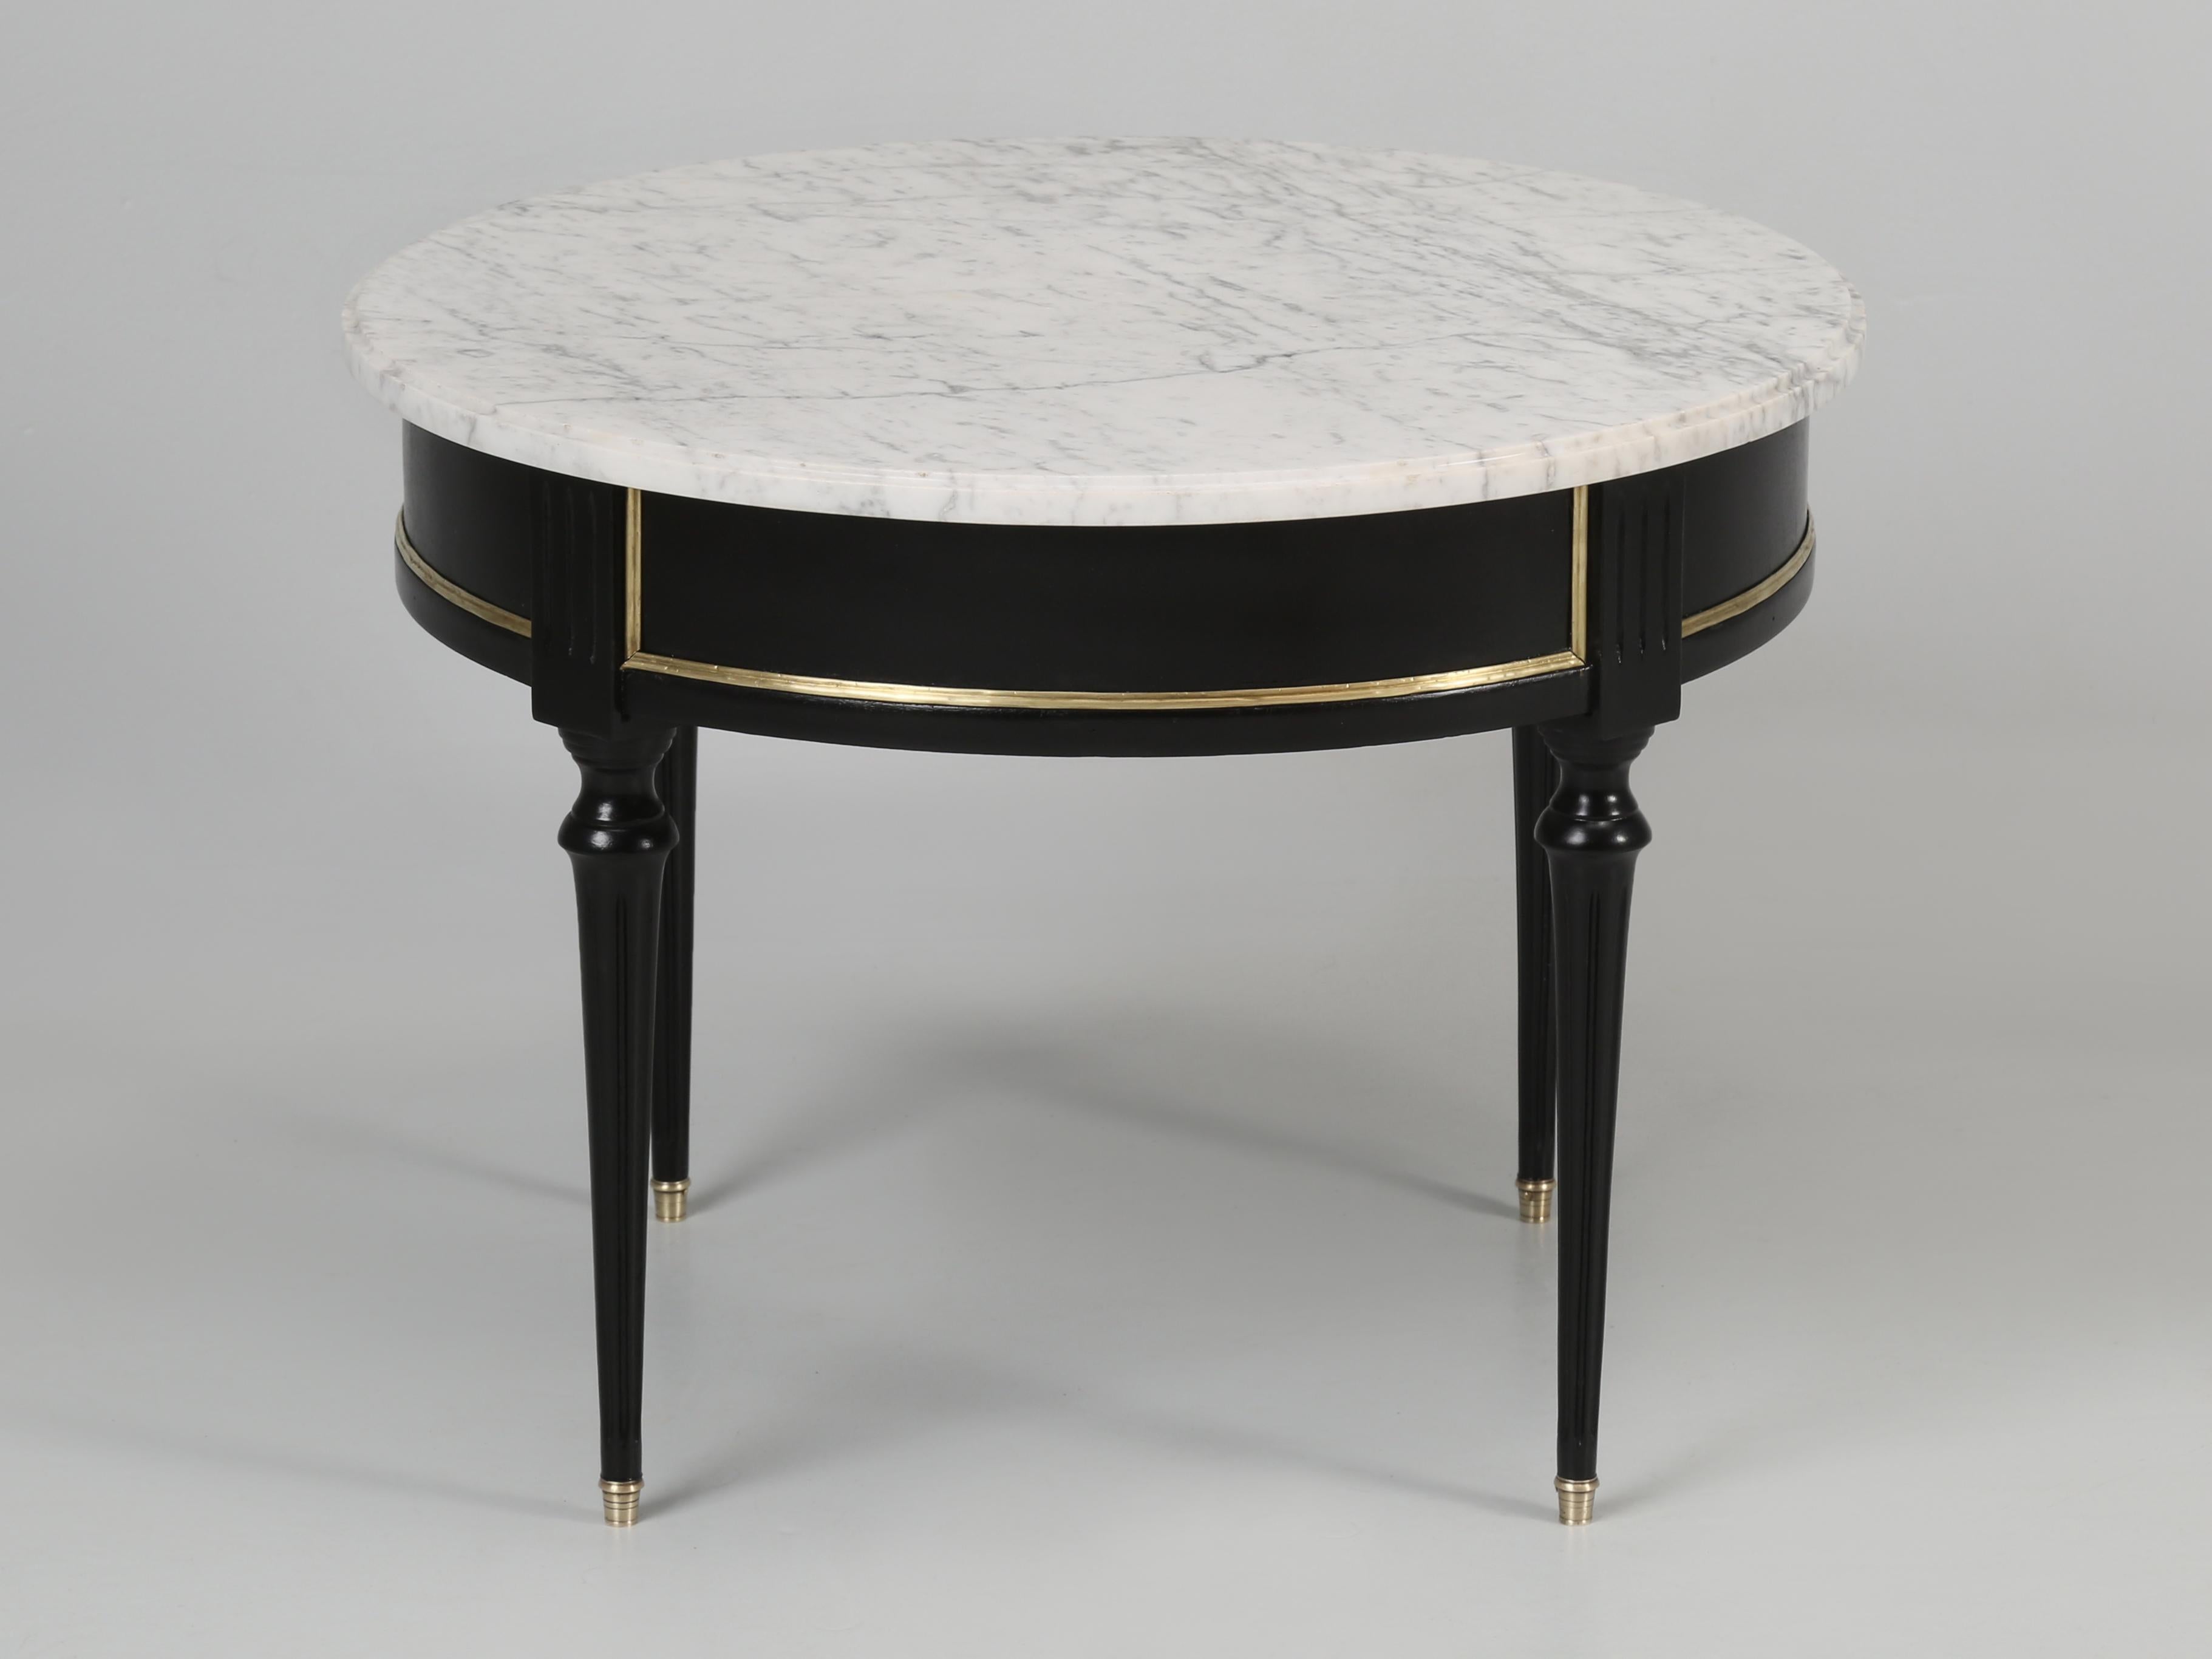 Table basse française Vintage de style Louis XVI avec un plateau en marbre de Carrare. Le bois a été soigneusement poncé et ébonisé dans notre département de finition Old Plank, de sorte que vous pouvez encore voir le grain du bois sur la table